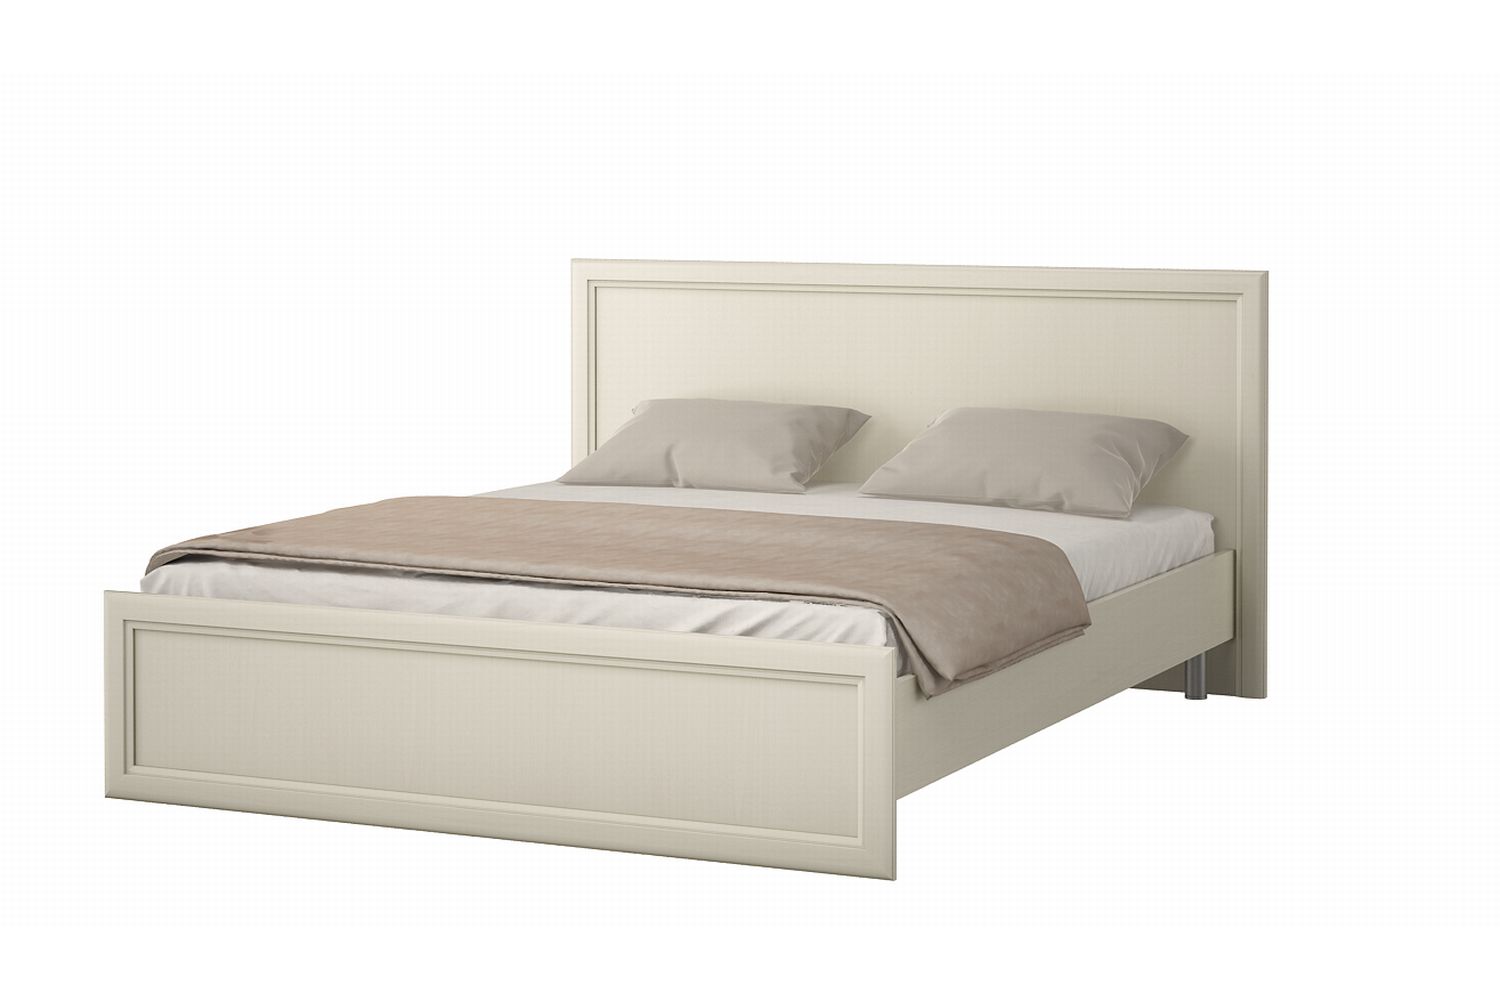 Двуспальные кровати - изображение №2 "Кровать Луара"  на www.Angstrem-mebel.ru